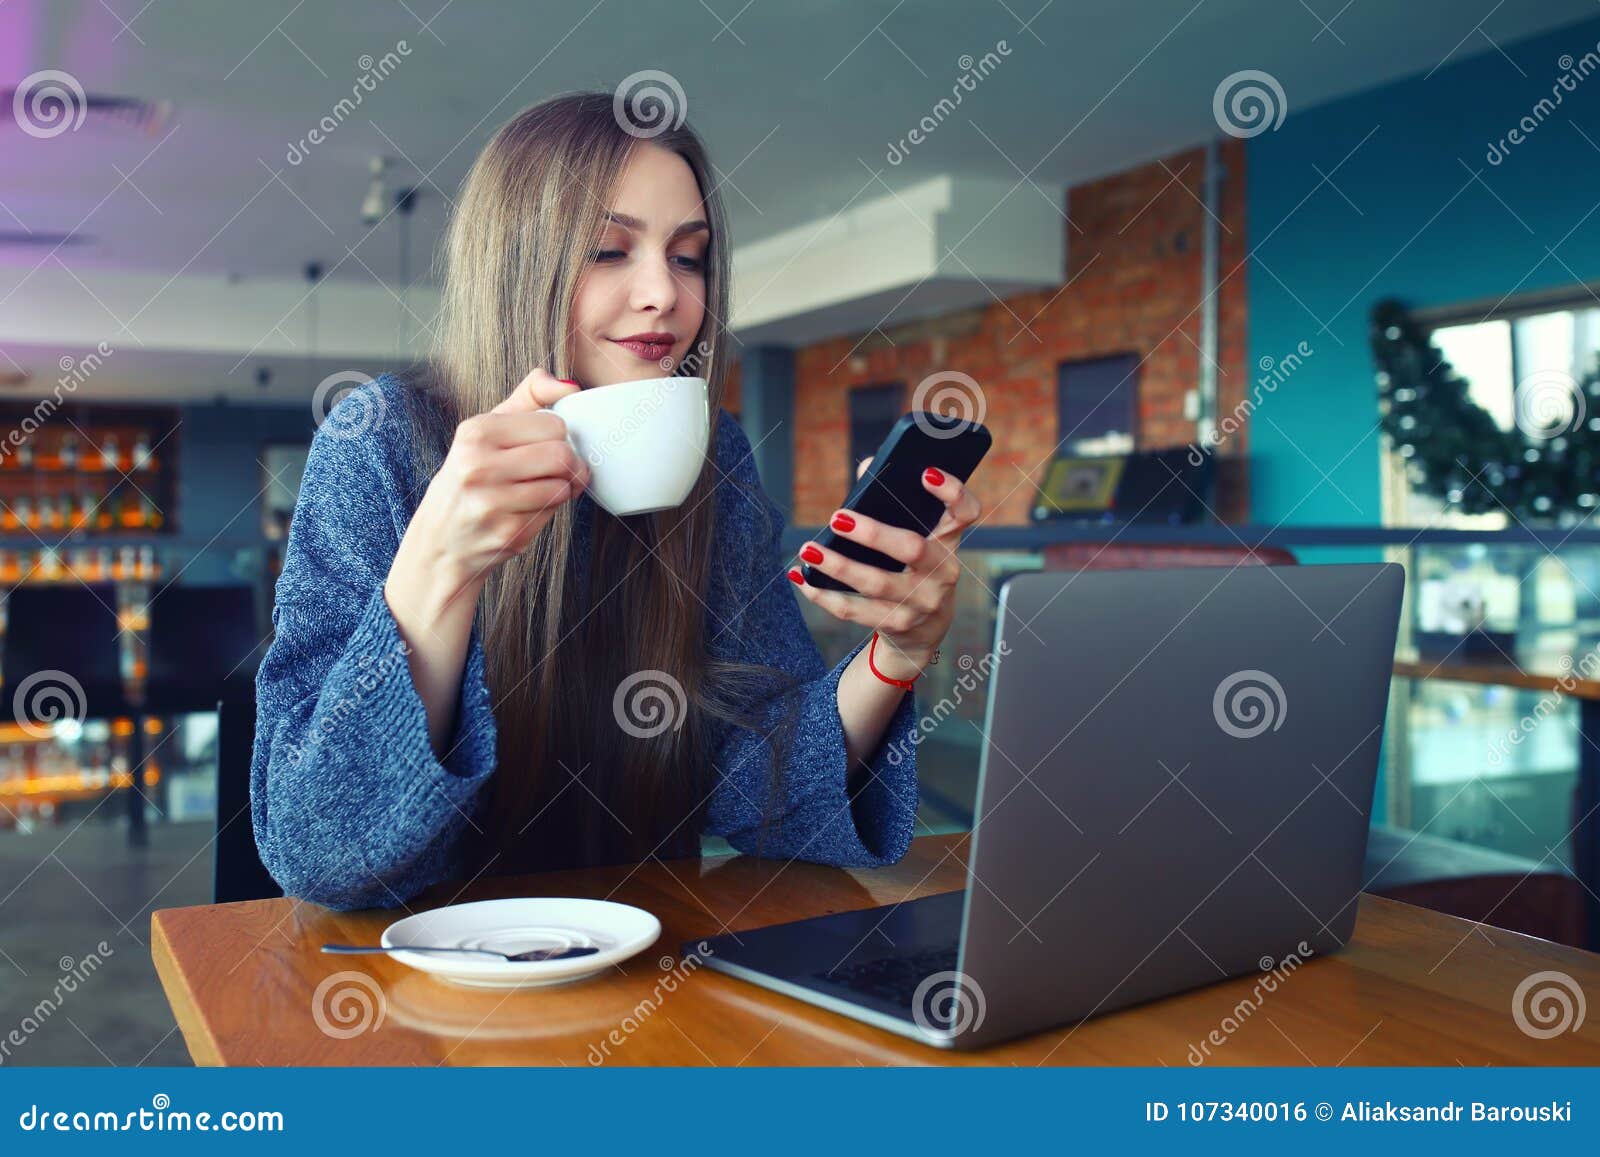 Подруга сидит в телефоне. Девушка в кафе с телефоном. Девушка со смартфоном в офисе. Девушка с телефоном в руках в кафе. Сидит за столом с телефоном.